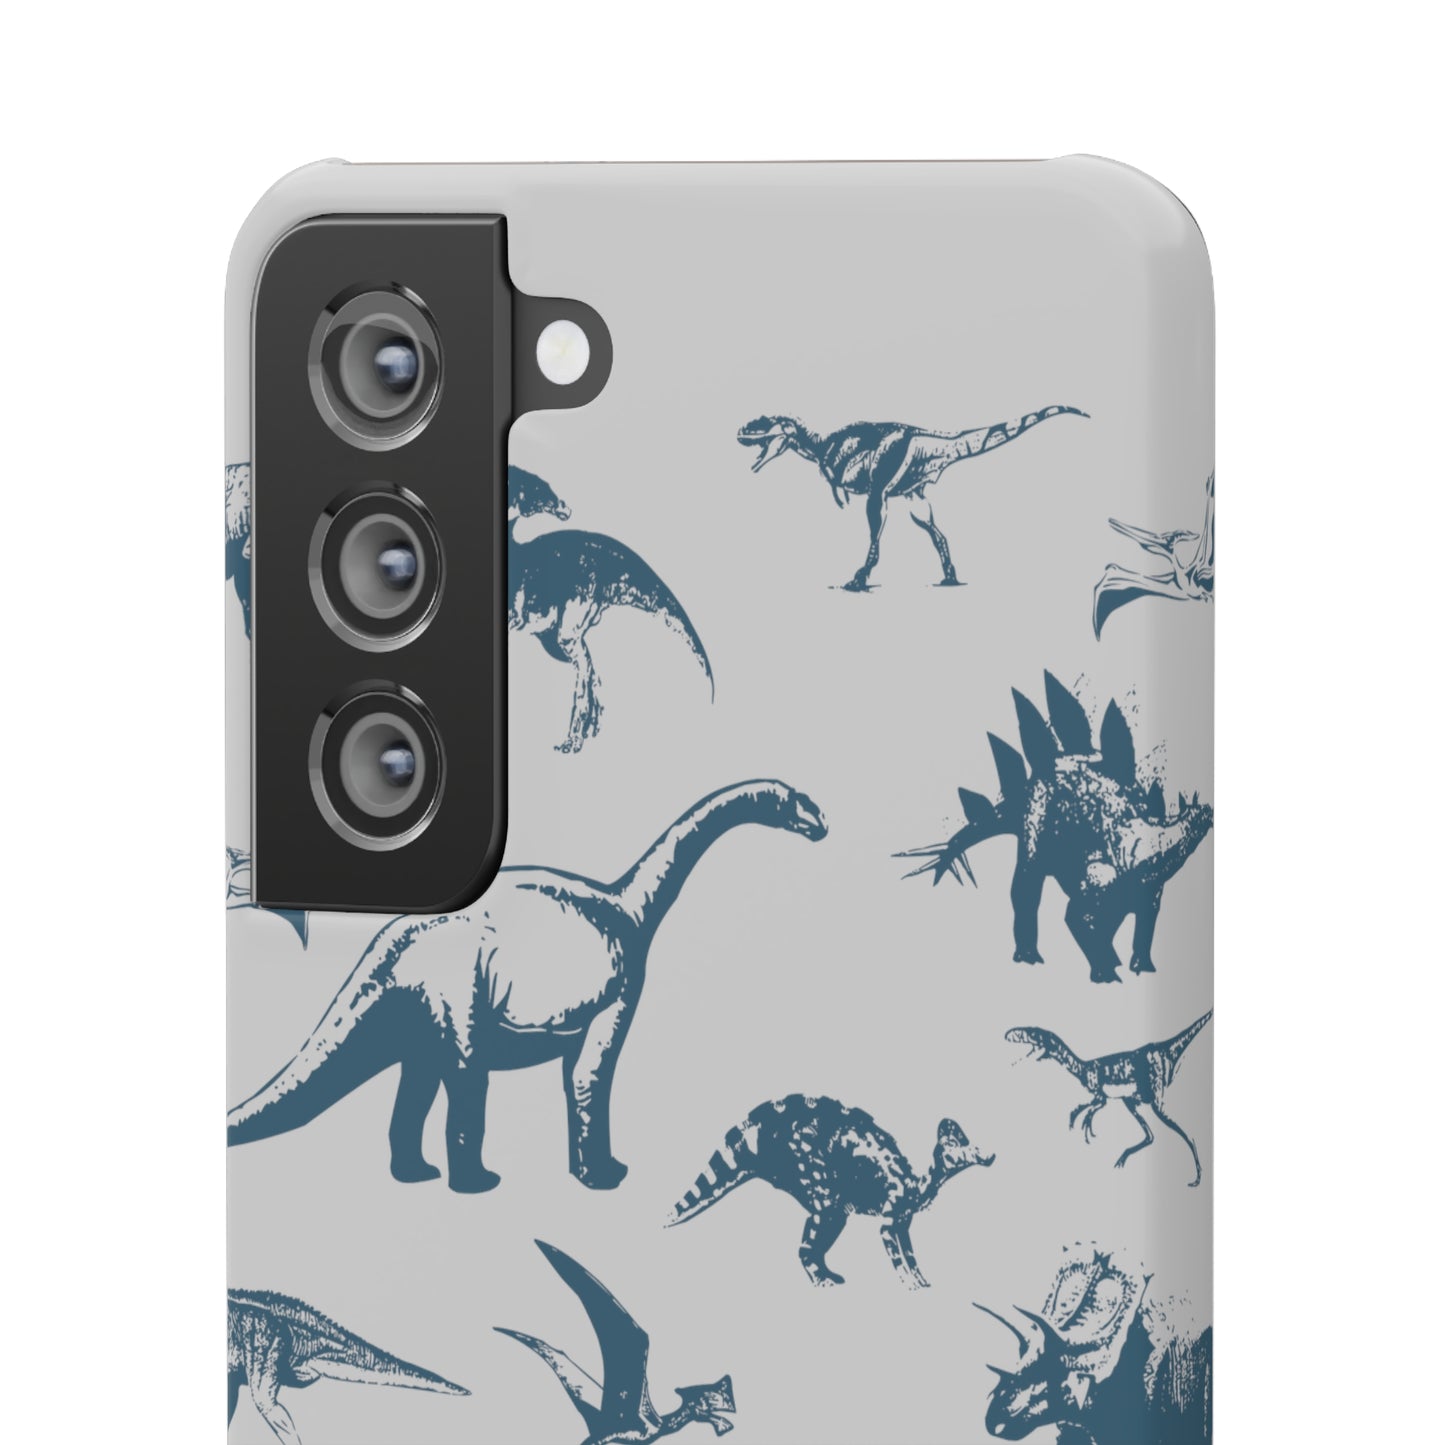 Dinosaur Snap Cases